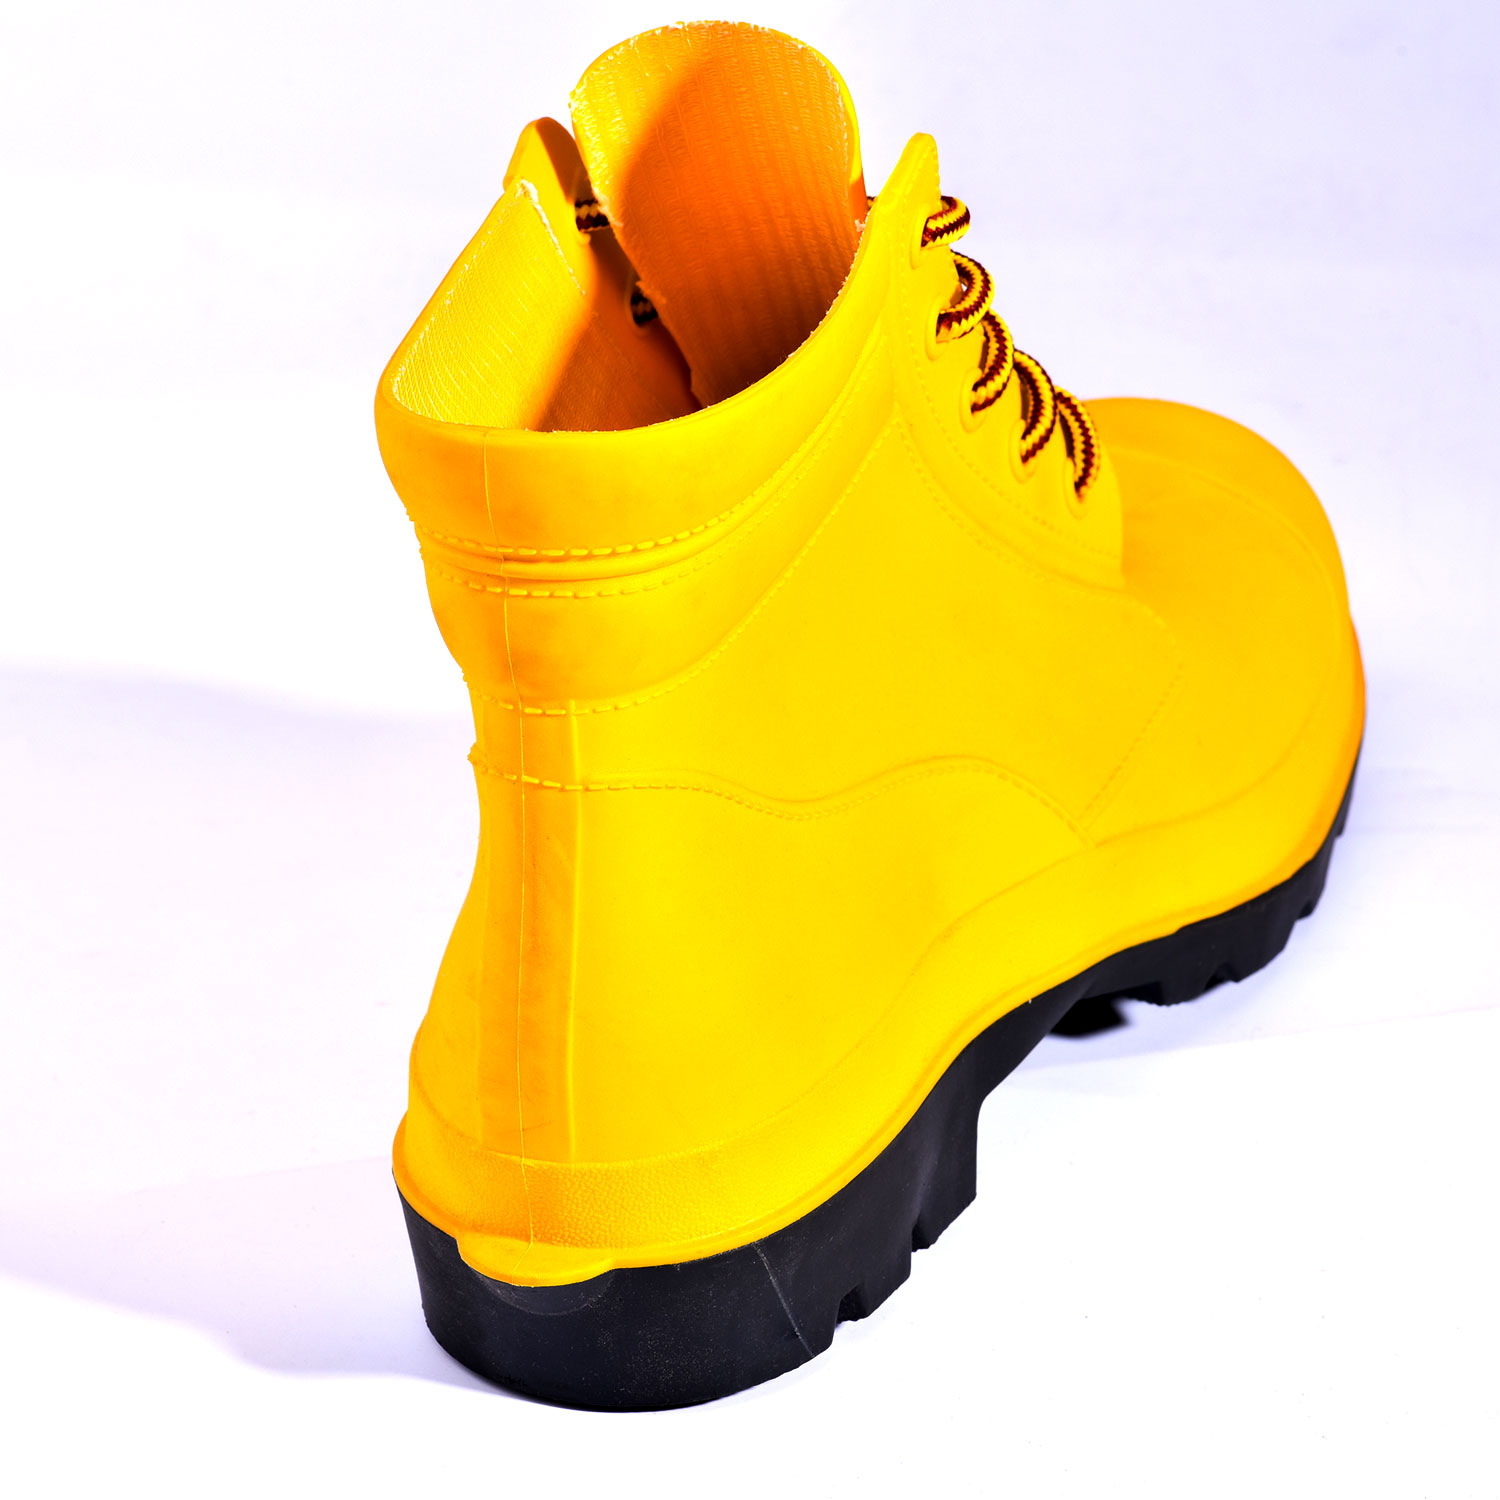 Steel Toe PVC Boots W-6050 Orange